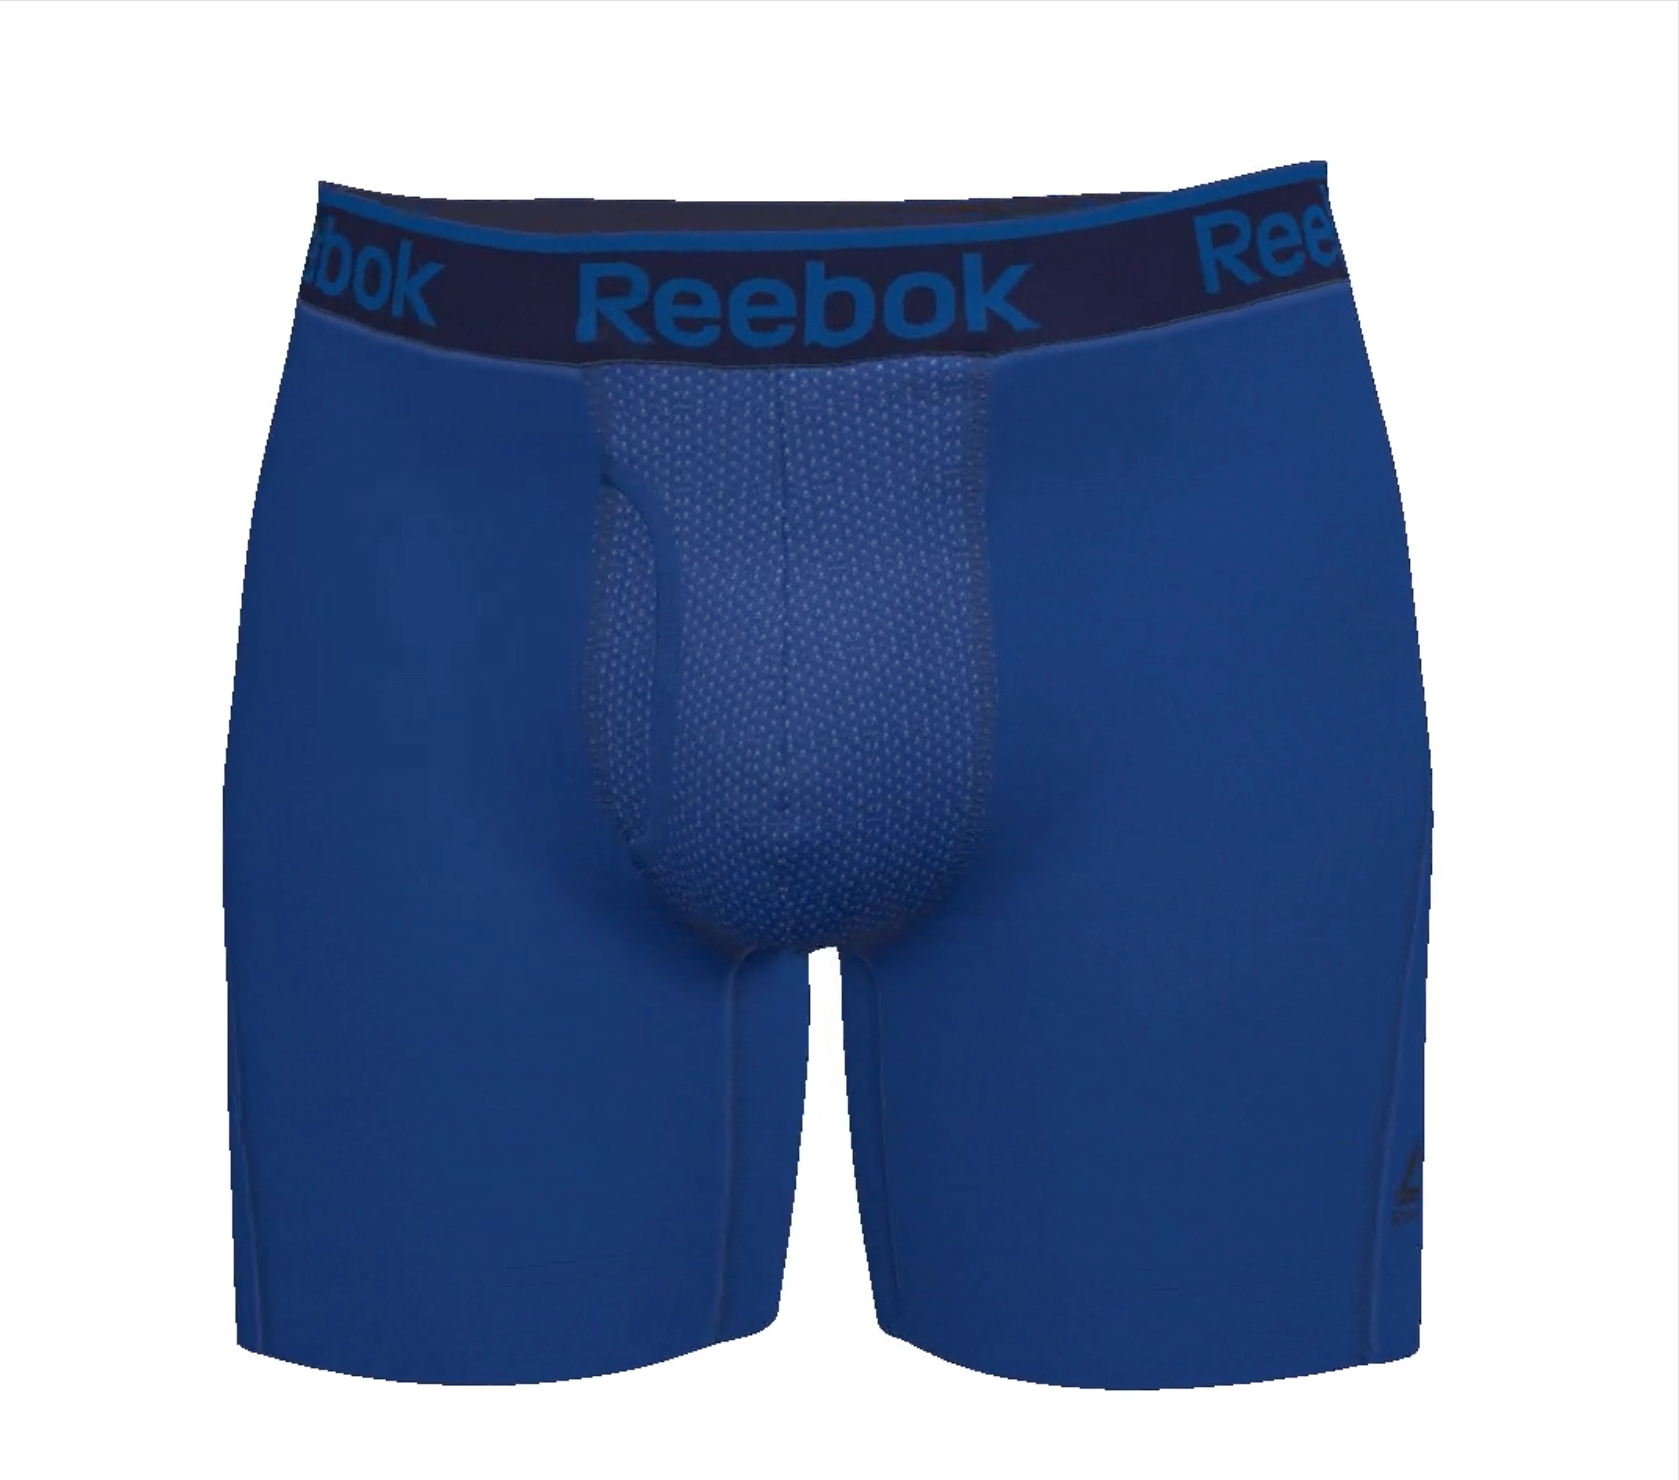 Visiter la boutique ReebokReebok Men's Active Underwear Size Medium Sport Soft Performance Boxer Briefs Navy/Grey/Print 8 Pack 